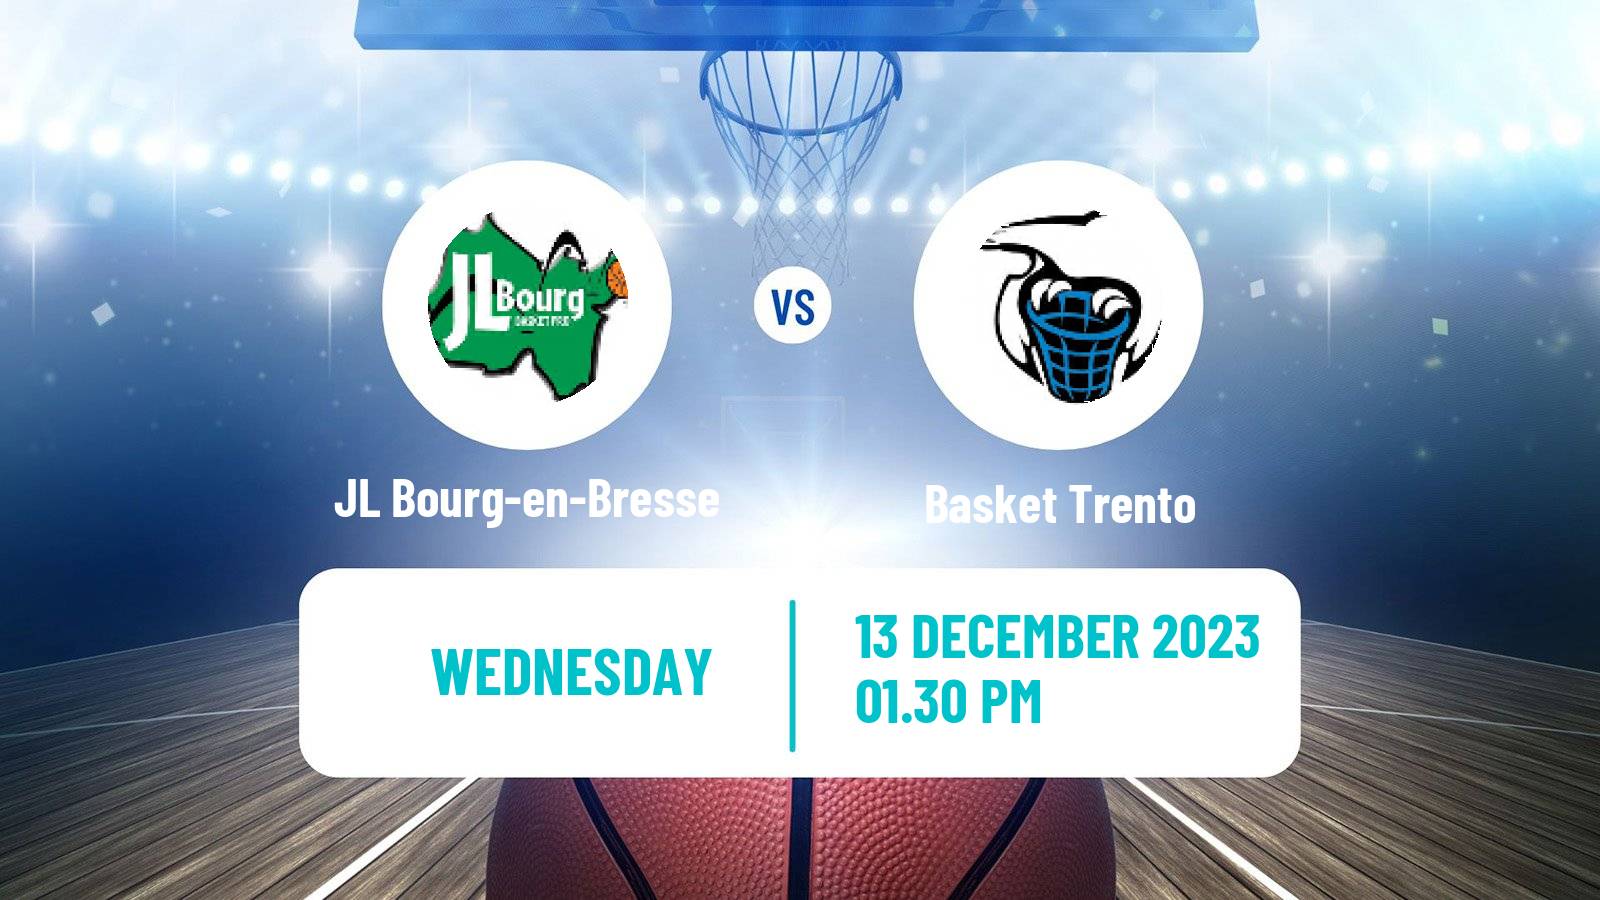 Basketball Eurocup JL Bourg-en-Bresse - Basket Trento